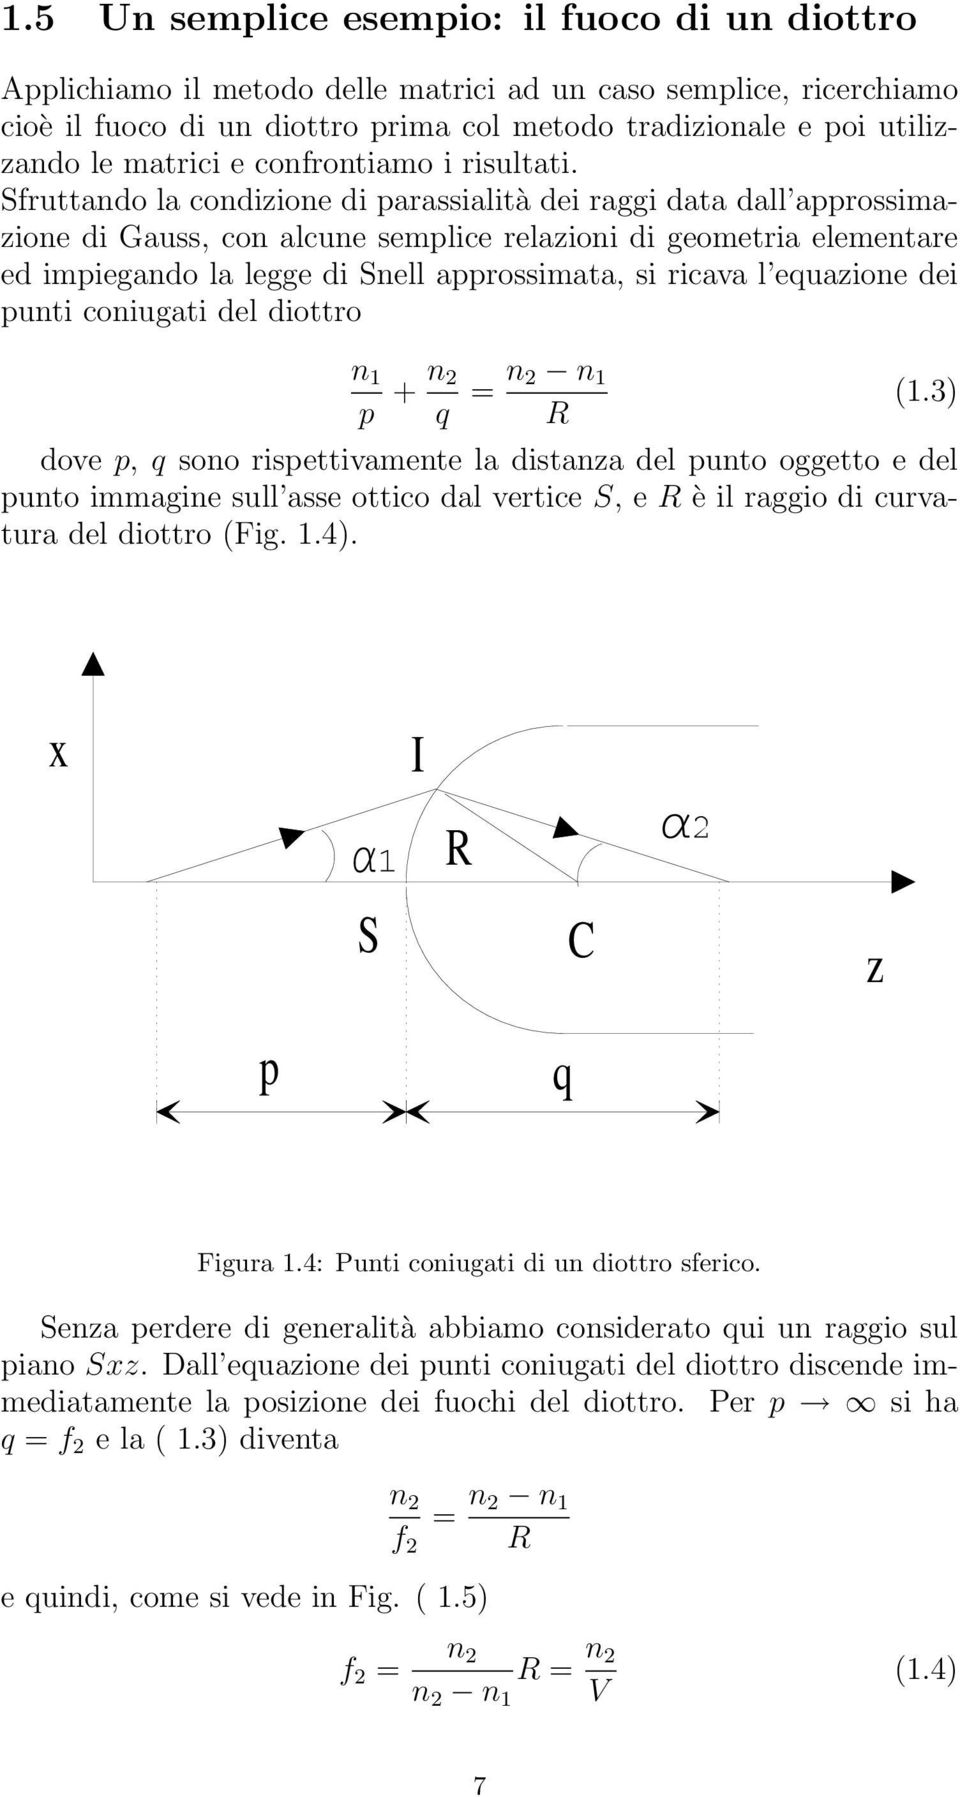 Sfruttando la condizione di parassialità dei raggi data dall approssimazione di Gauss, con alcune semplice relazioni di geometria elementare ed impiegando la legge di Snell approssimata, si ricava l